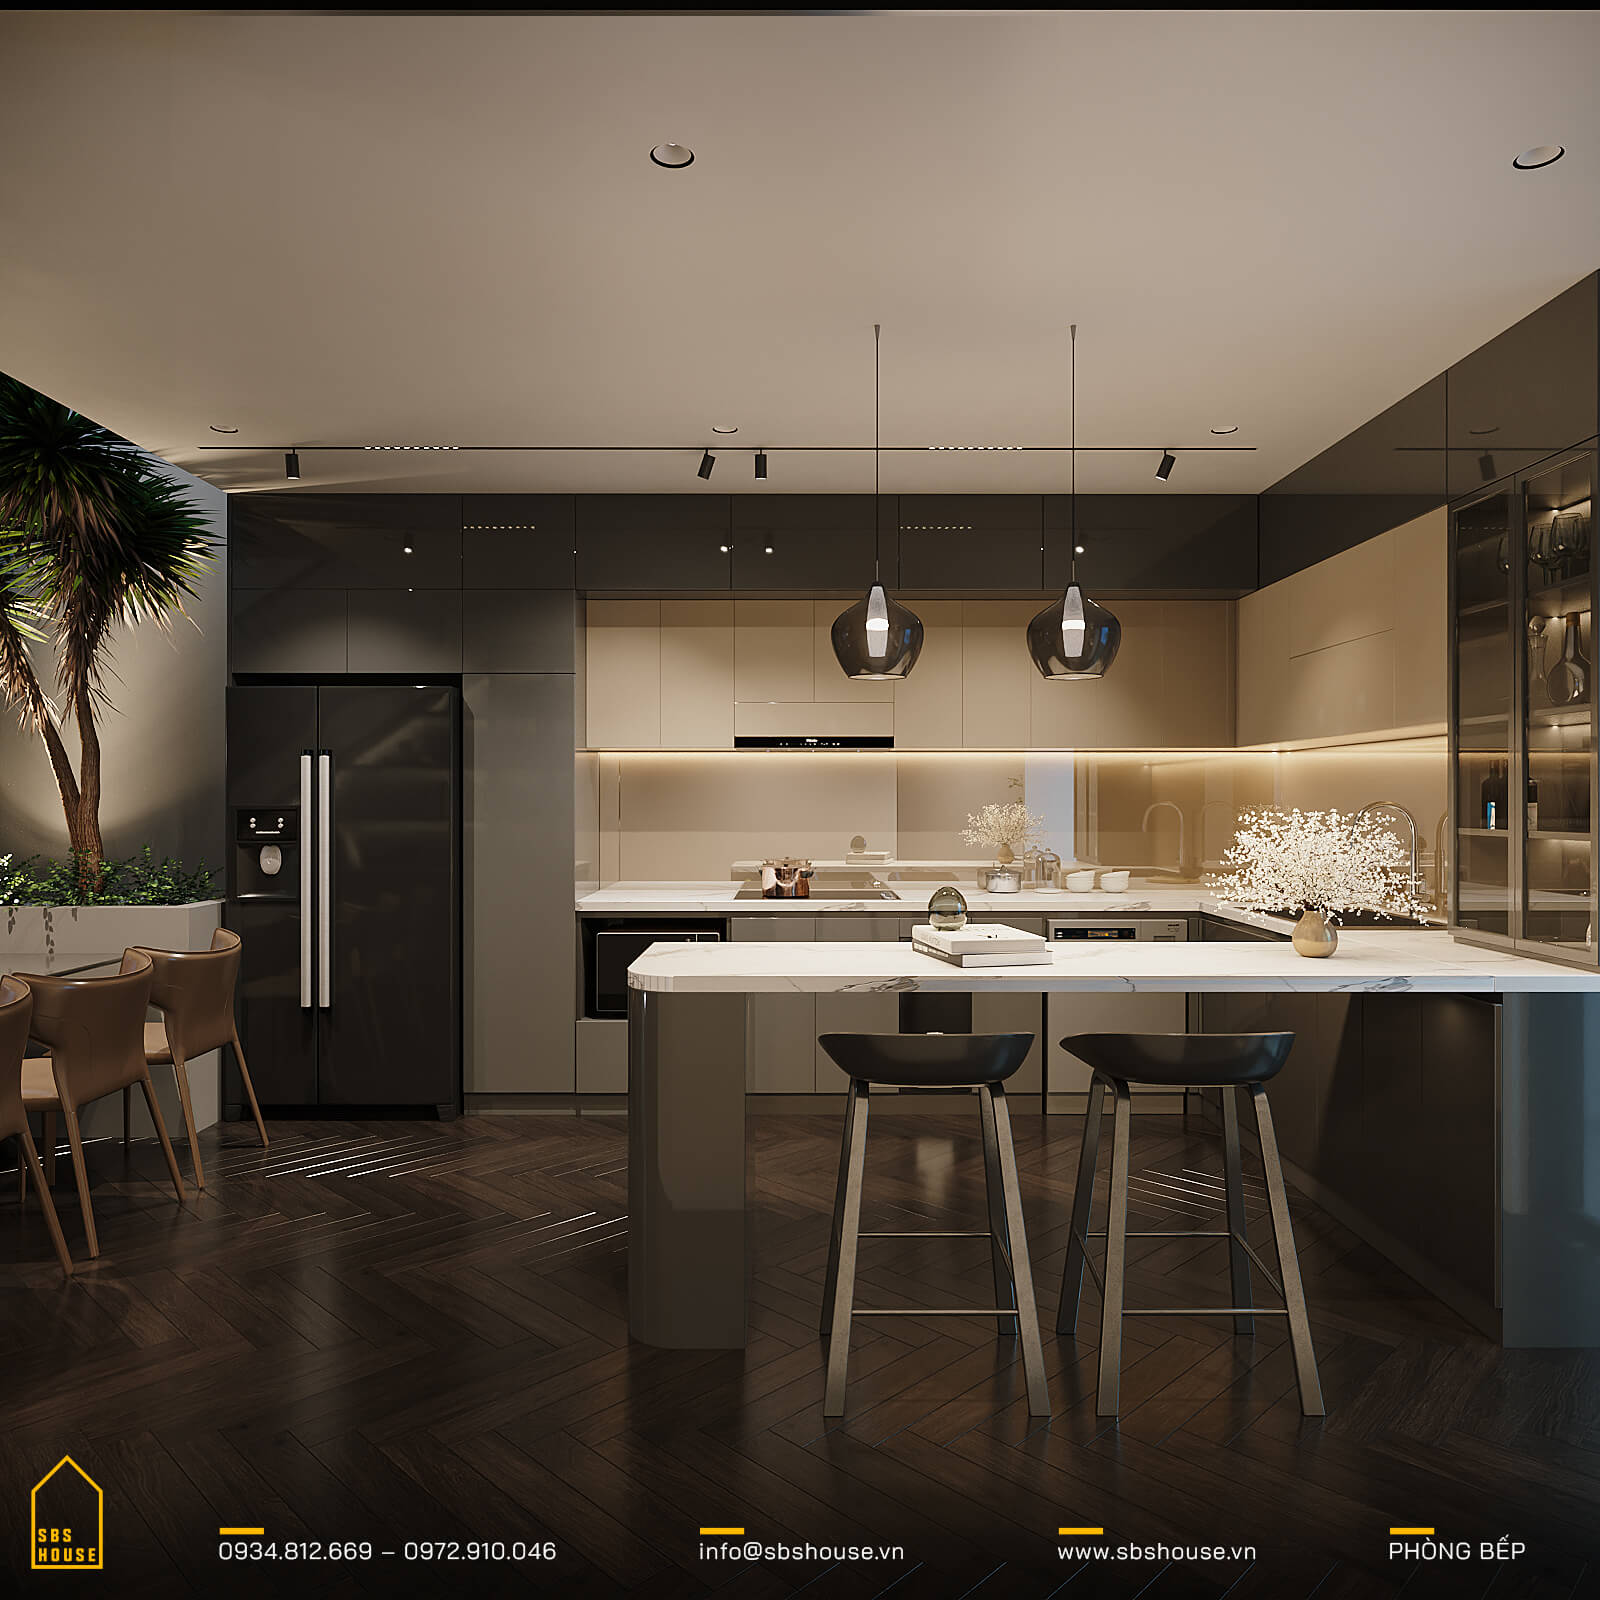 10 mẫu thiết kế nội thất phòng bếp đẹp, hiện đại mới nhất 2020